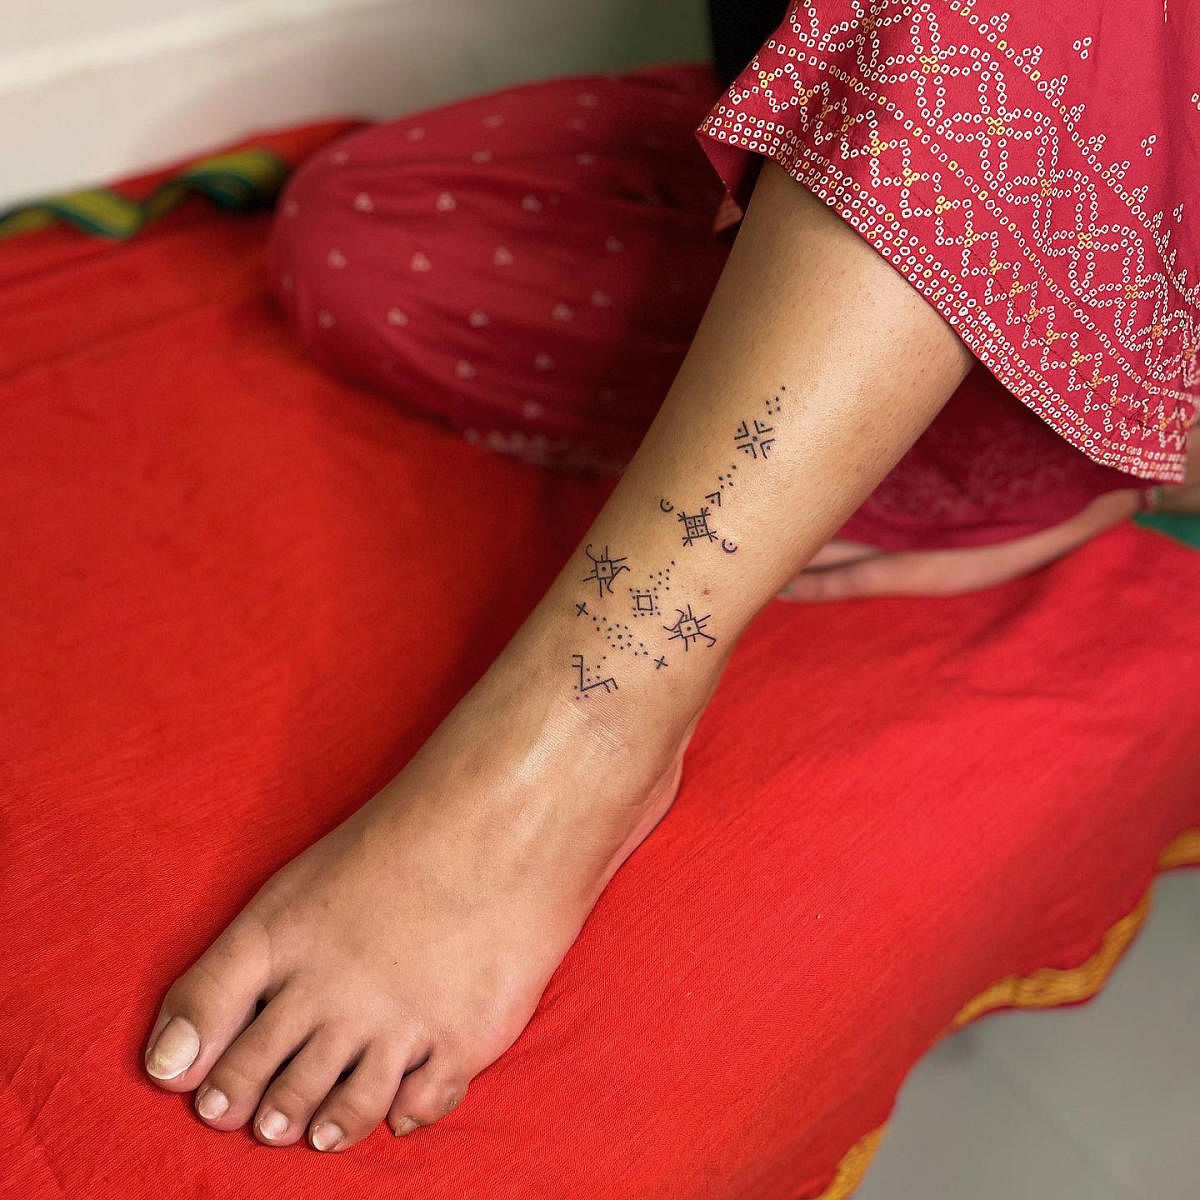 Theo Walcott gets Om Namah Shivay tattoo on his back । इस अंग्रेज फुटबॉलर  ने अपनी पीठ पर कराया ऊं नमः शिवाय का टैटू - Latest News & Updates in Hindi  at